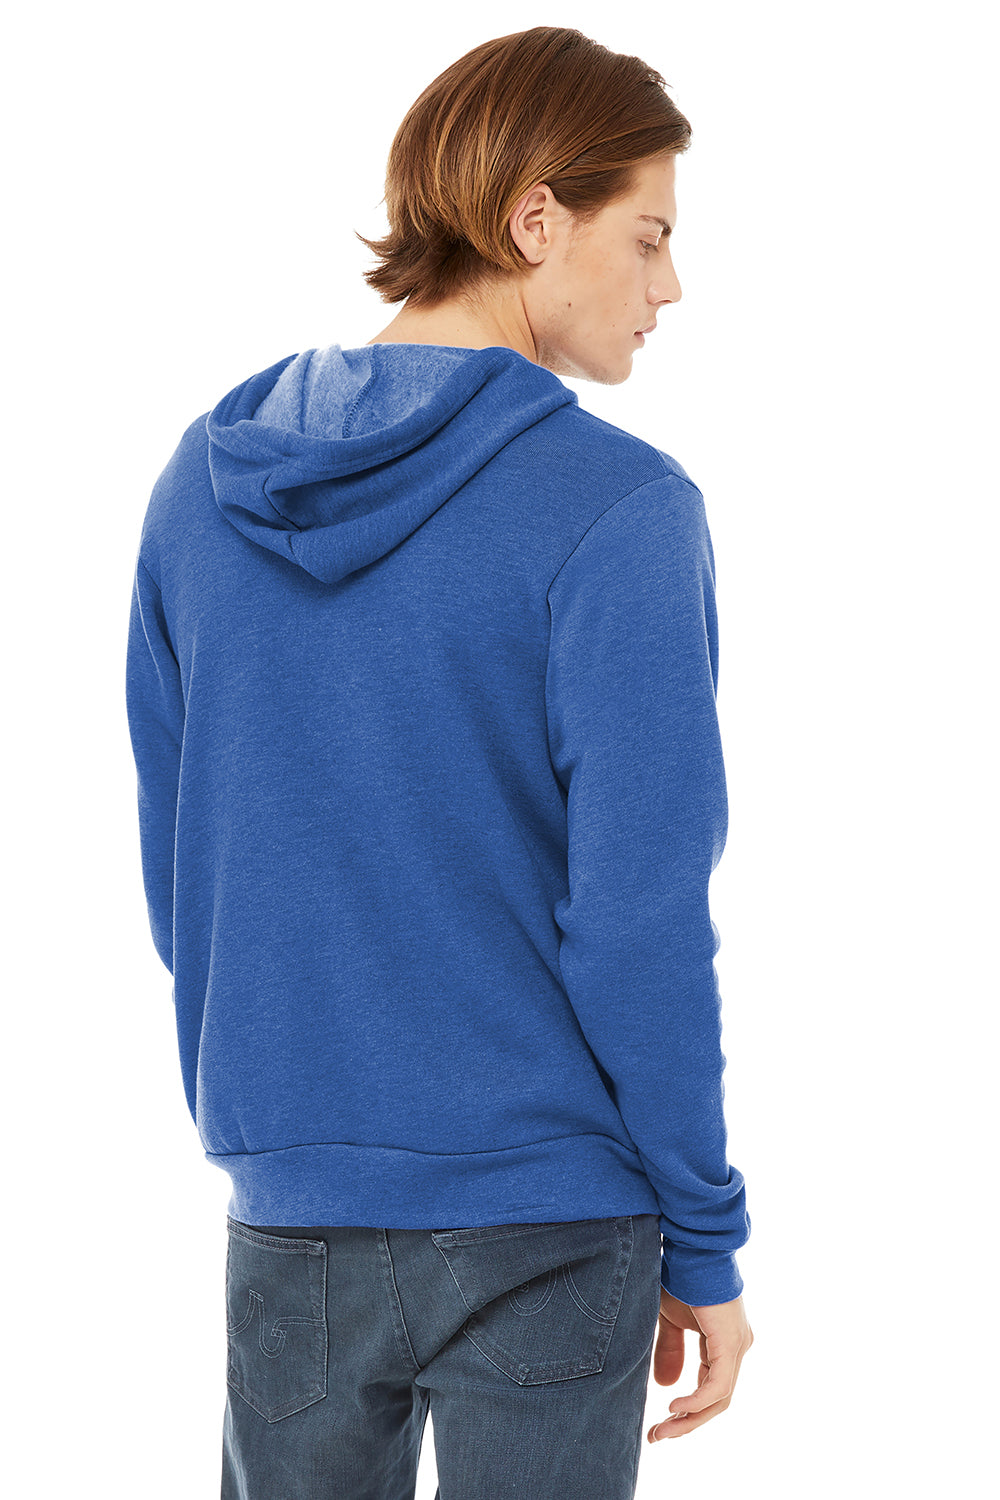 Bella + Canvas BC3739/3739 Mens Fleece Full Zip Hooded Sweatshirt Hoodie Heather True Royal Blue Model Back